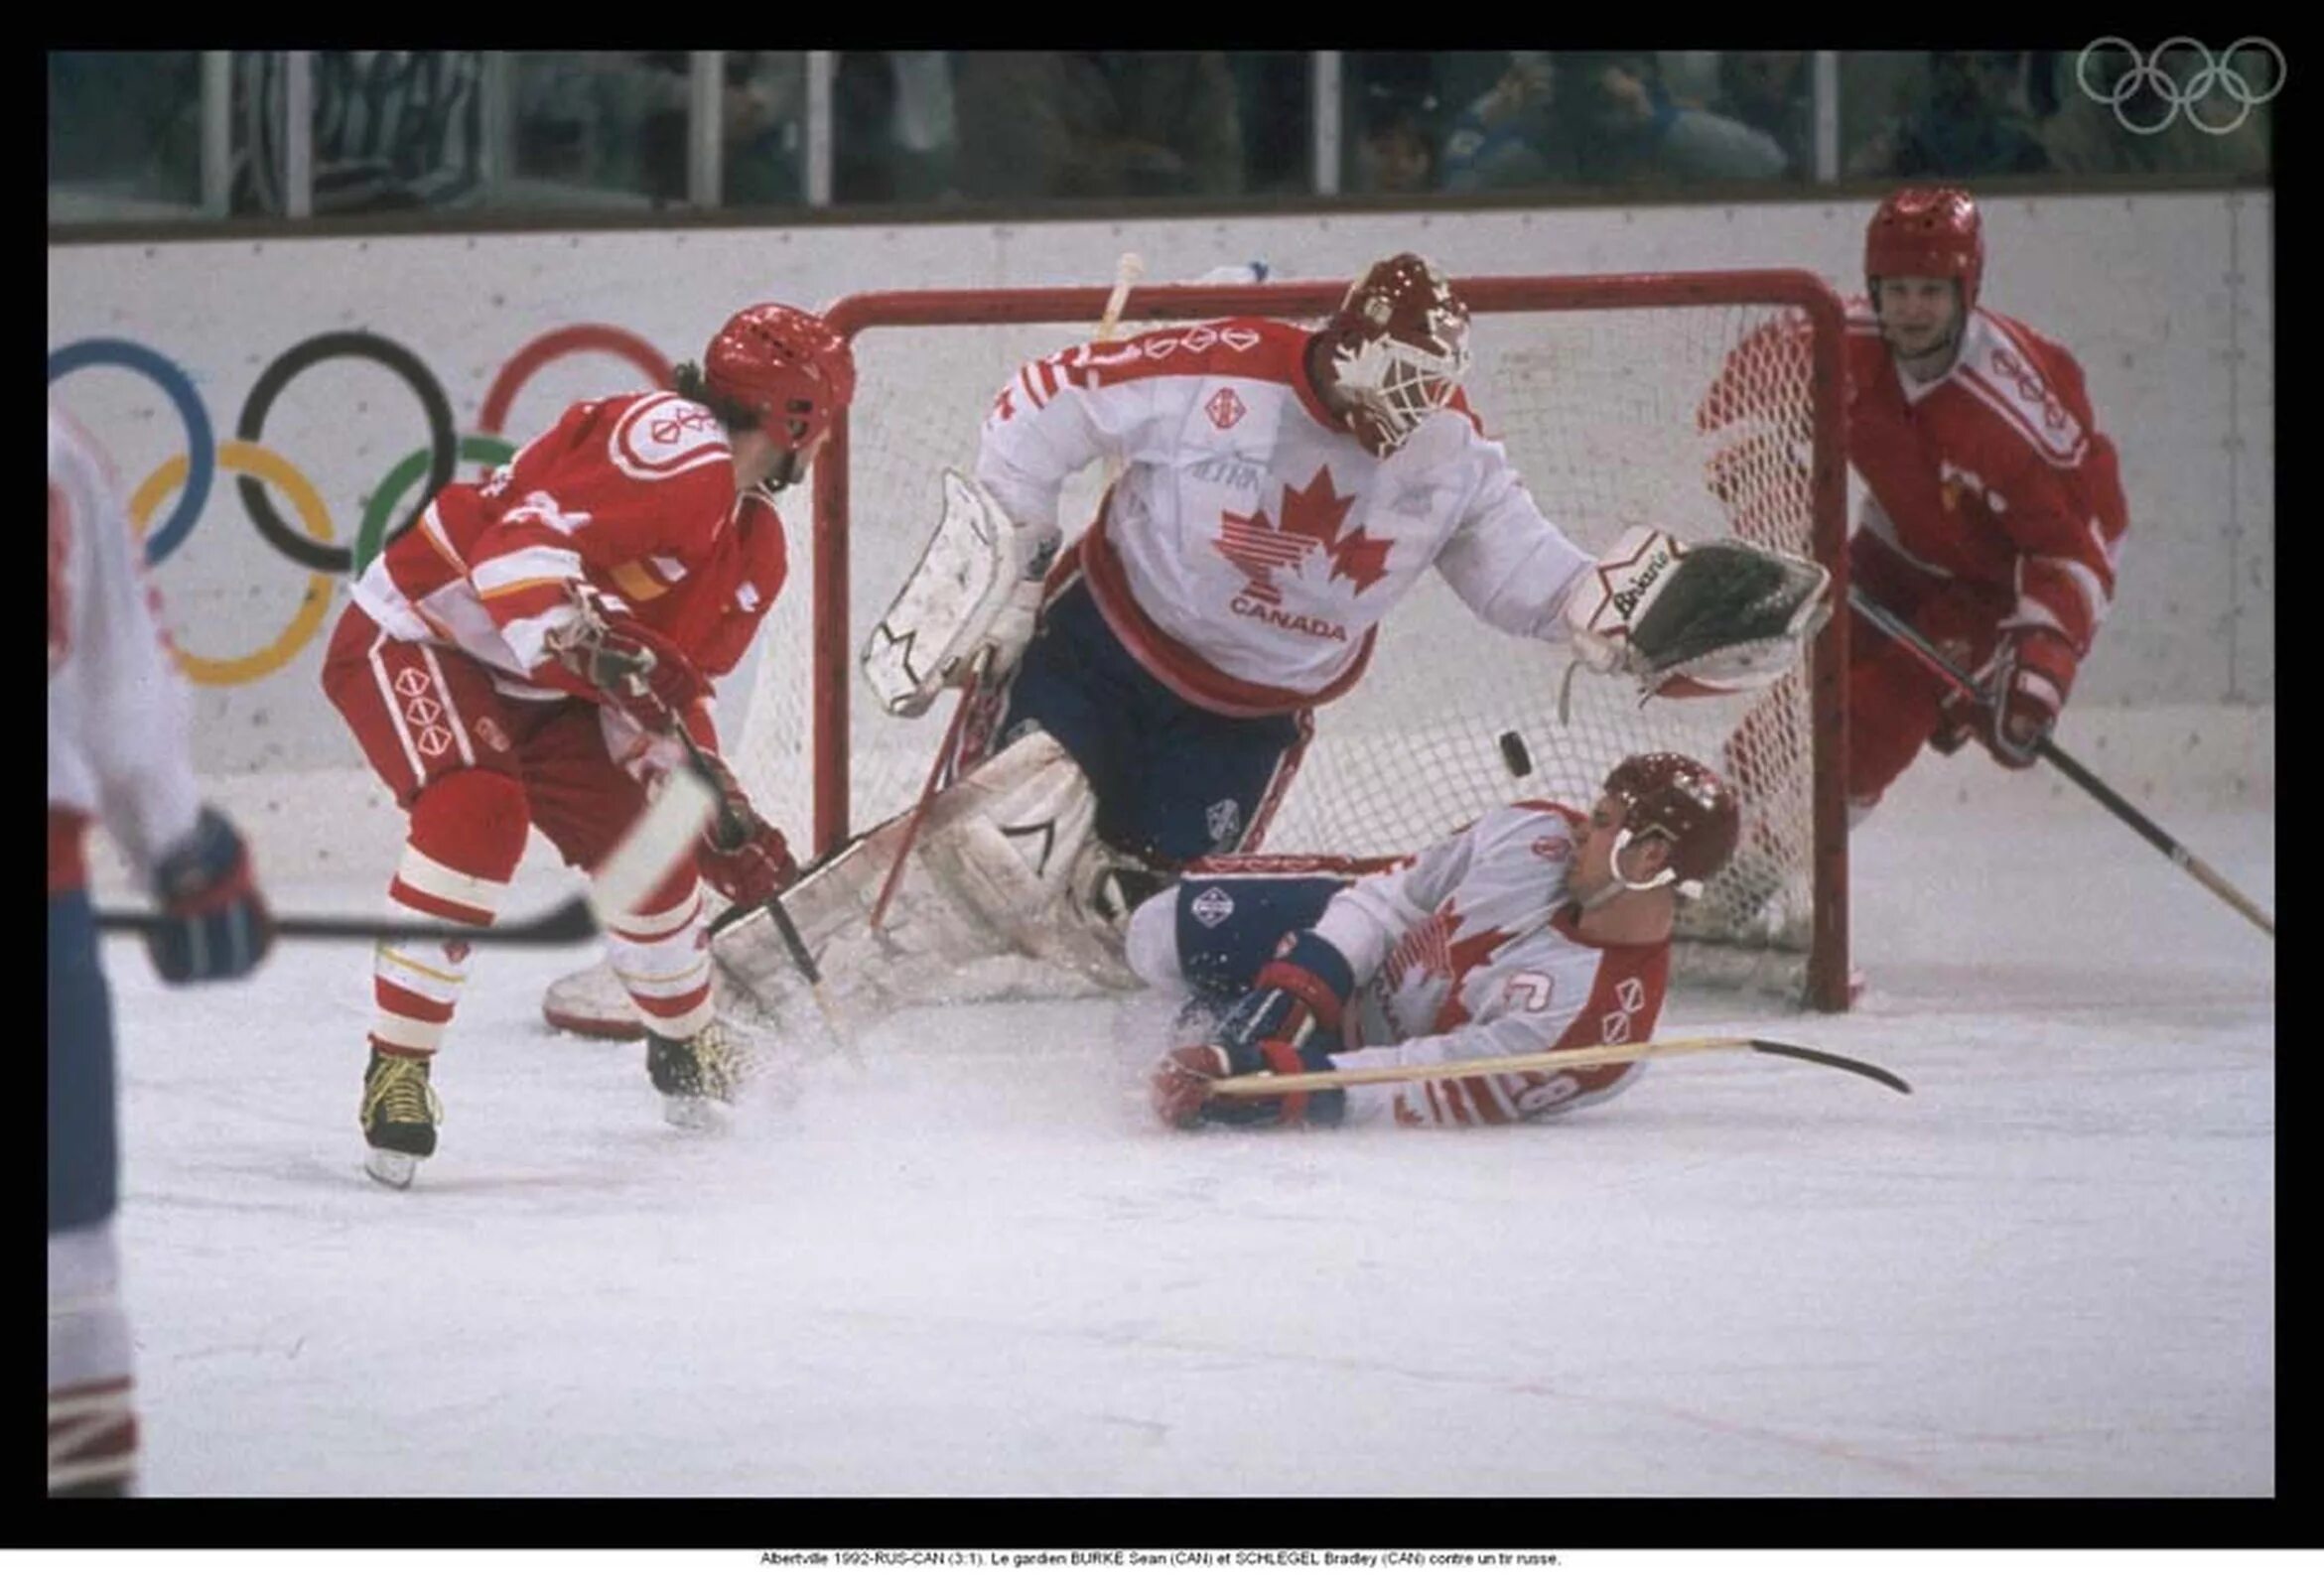 Олимпийские игры 1992 и 1994. ОИ Альбервиль 1992. Сборная Канады по хоккею 1992.